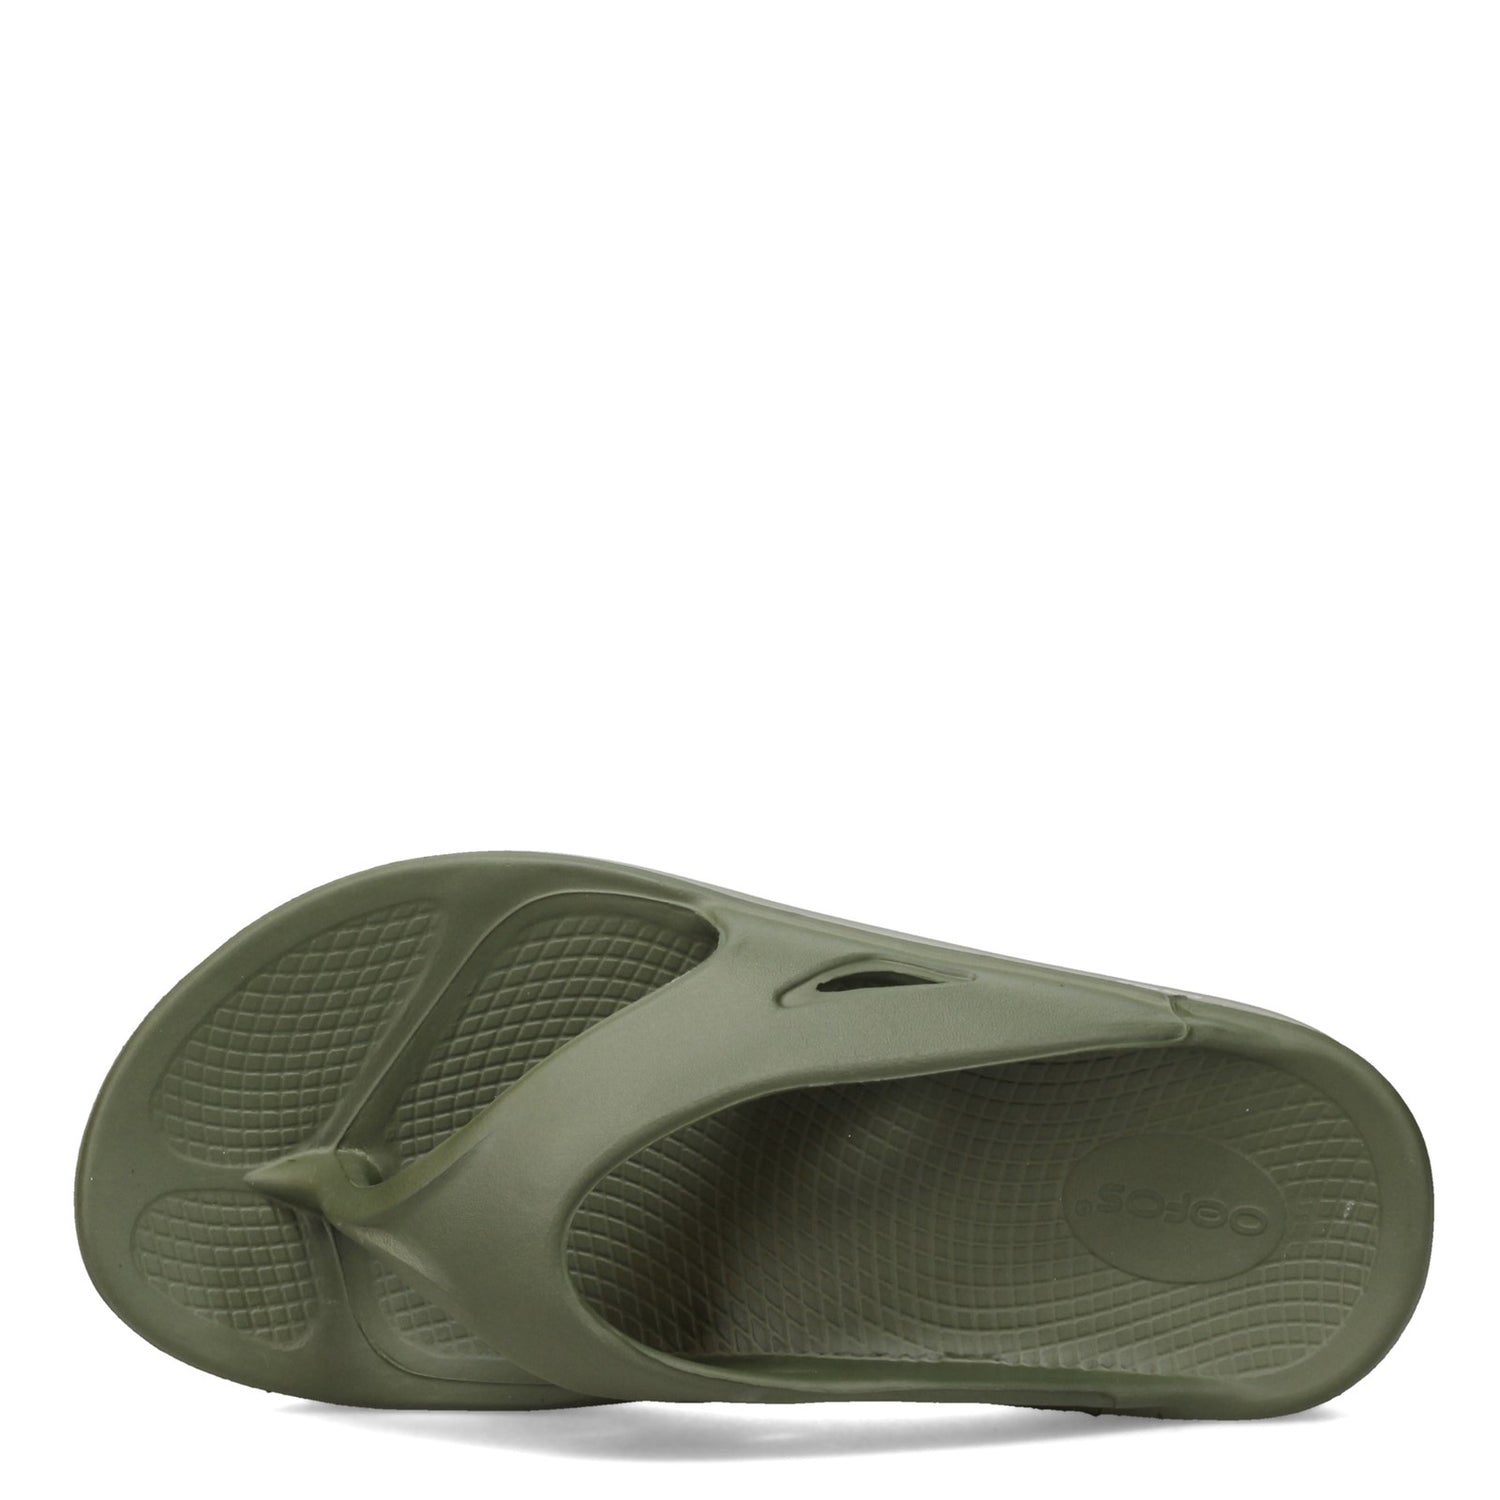 Peltz Shoes  Unisex Oofos OOriginal Sandal FOREST GREEN 1000-FORGREEN